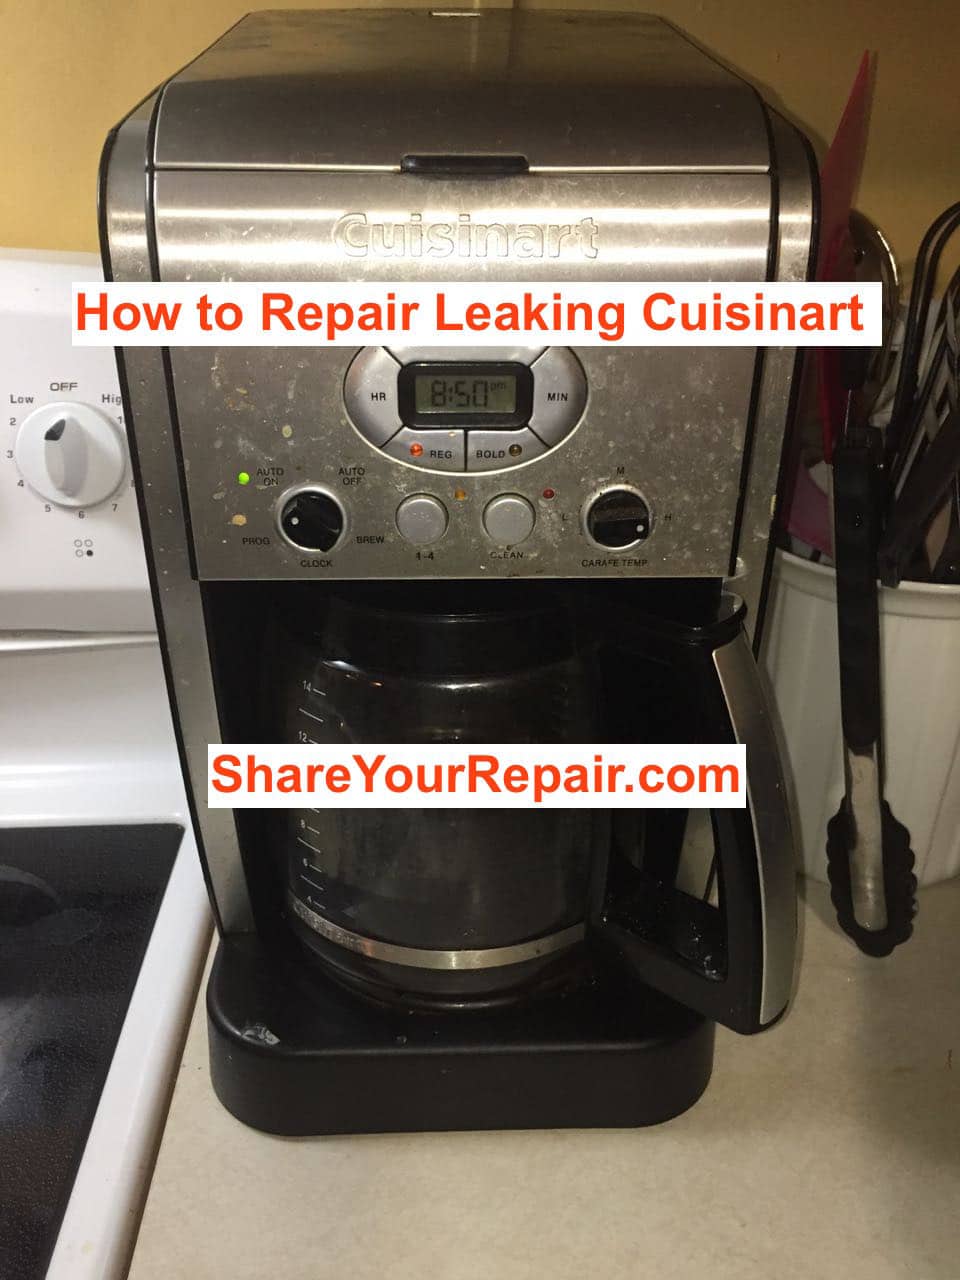 Repair a Leaking Cuisinart Coffee Maker · Share Your Repair